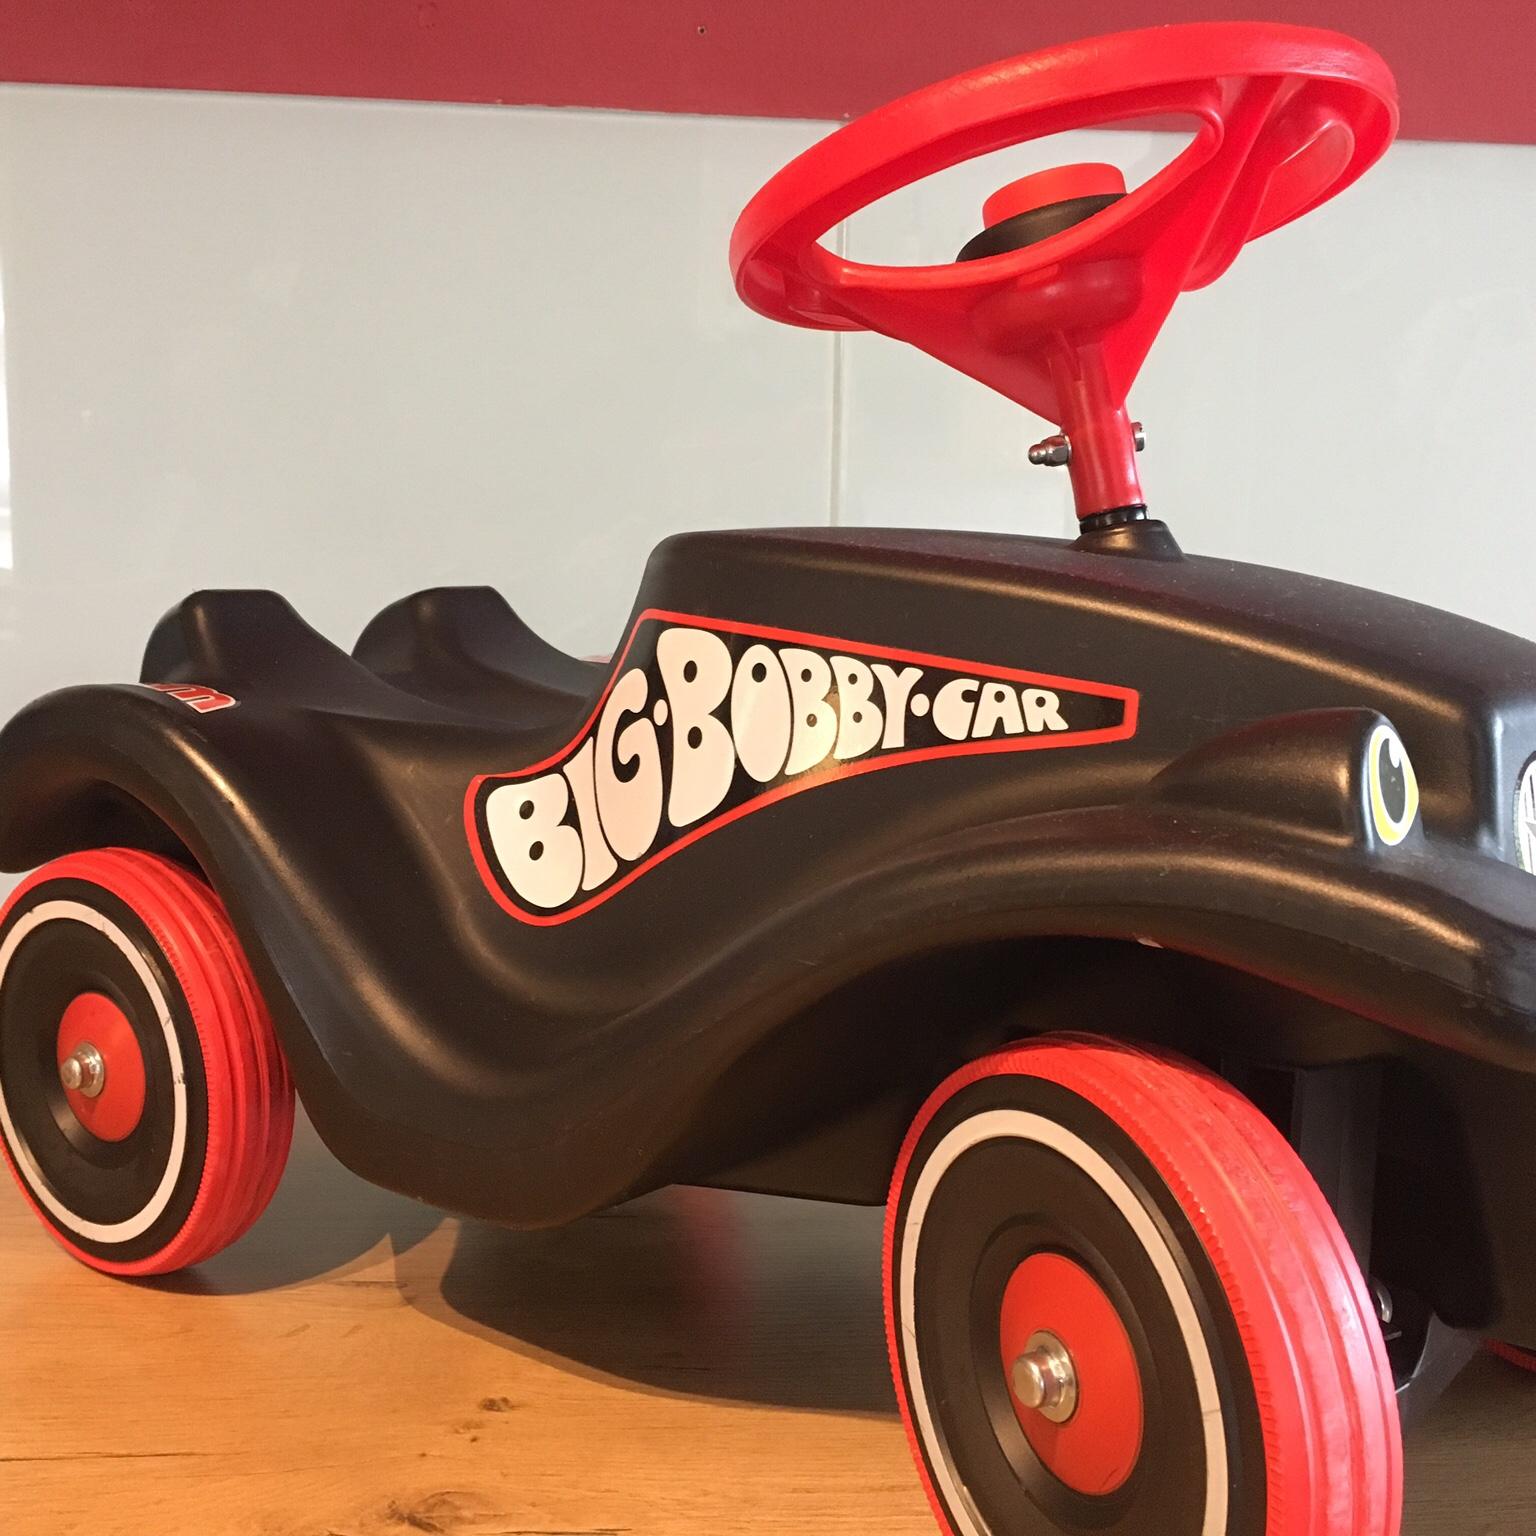 BIG Bobby Car Sport mit Flüsterrädern, schwarz/rot